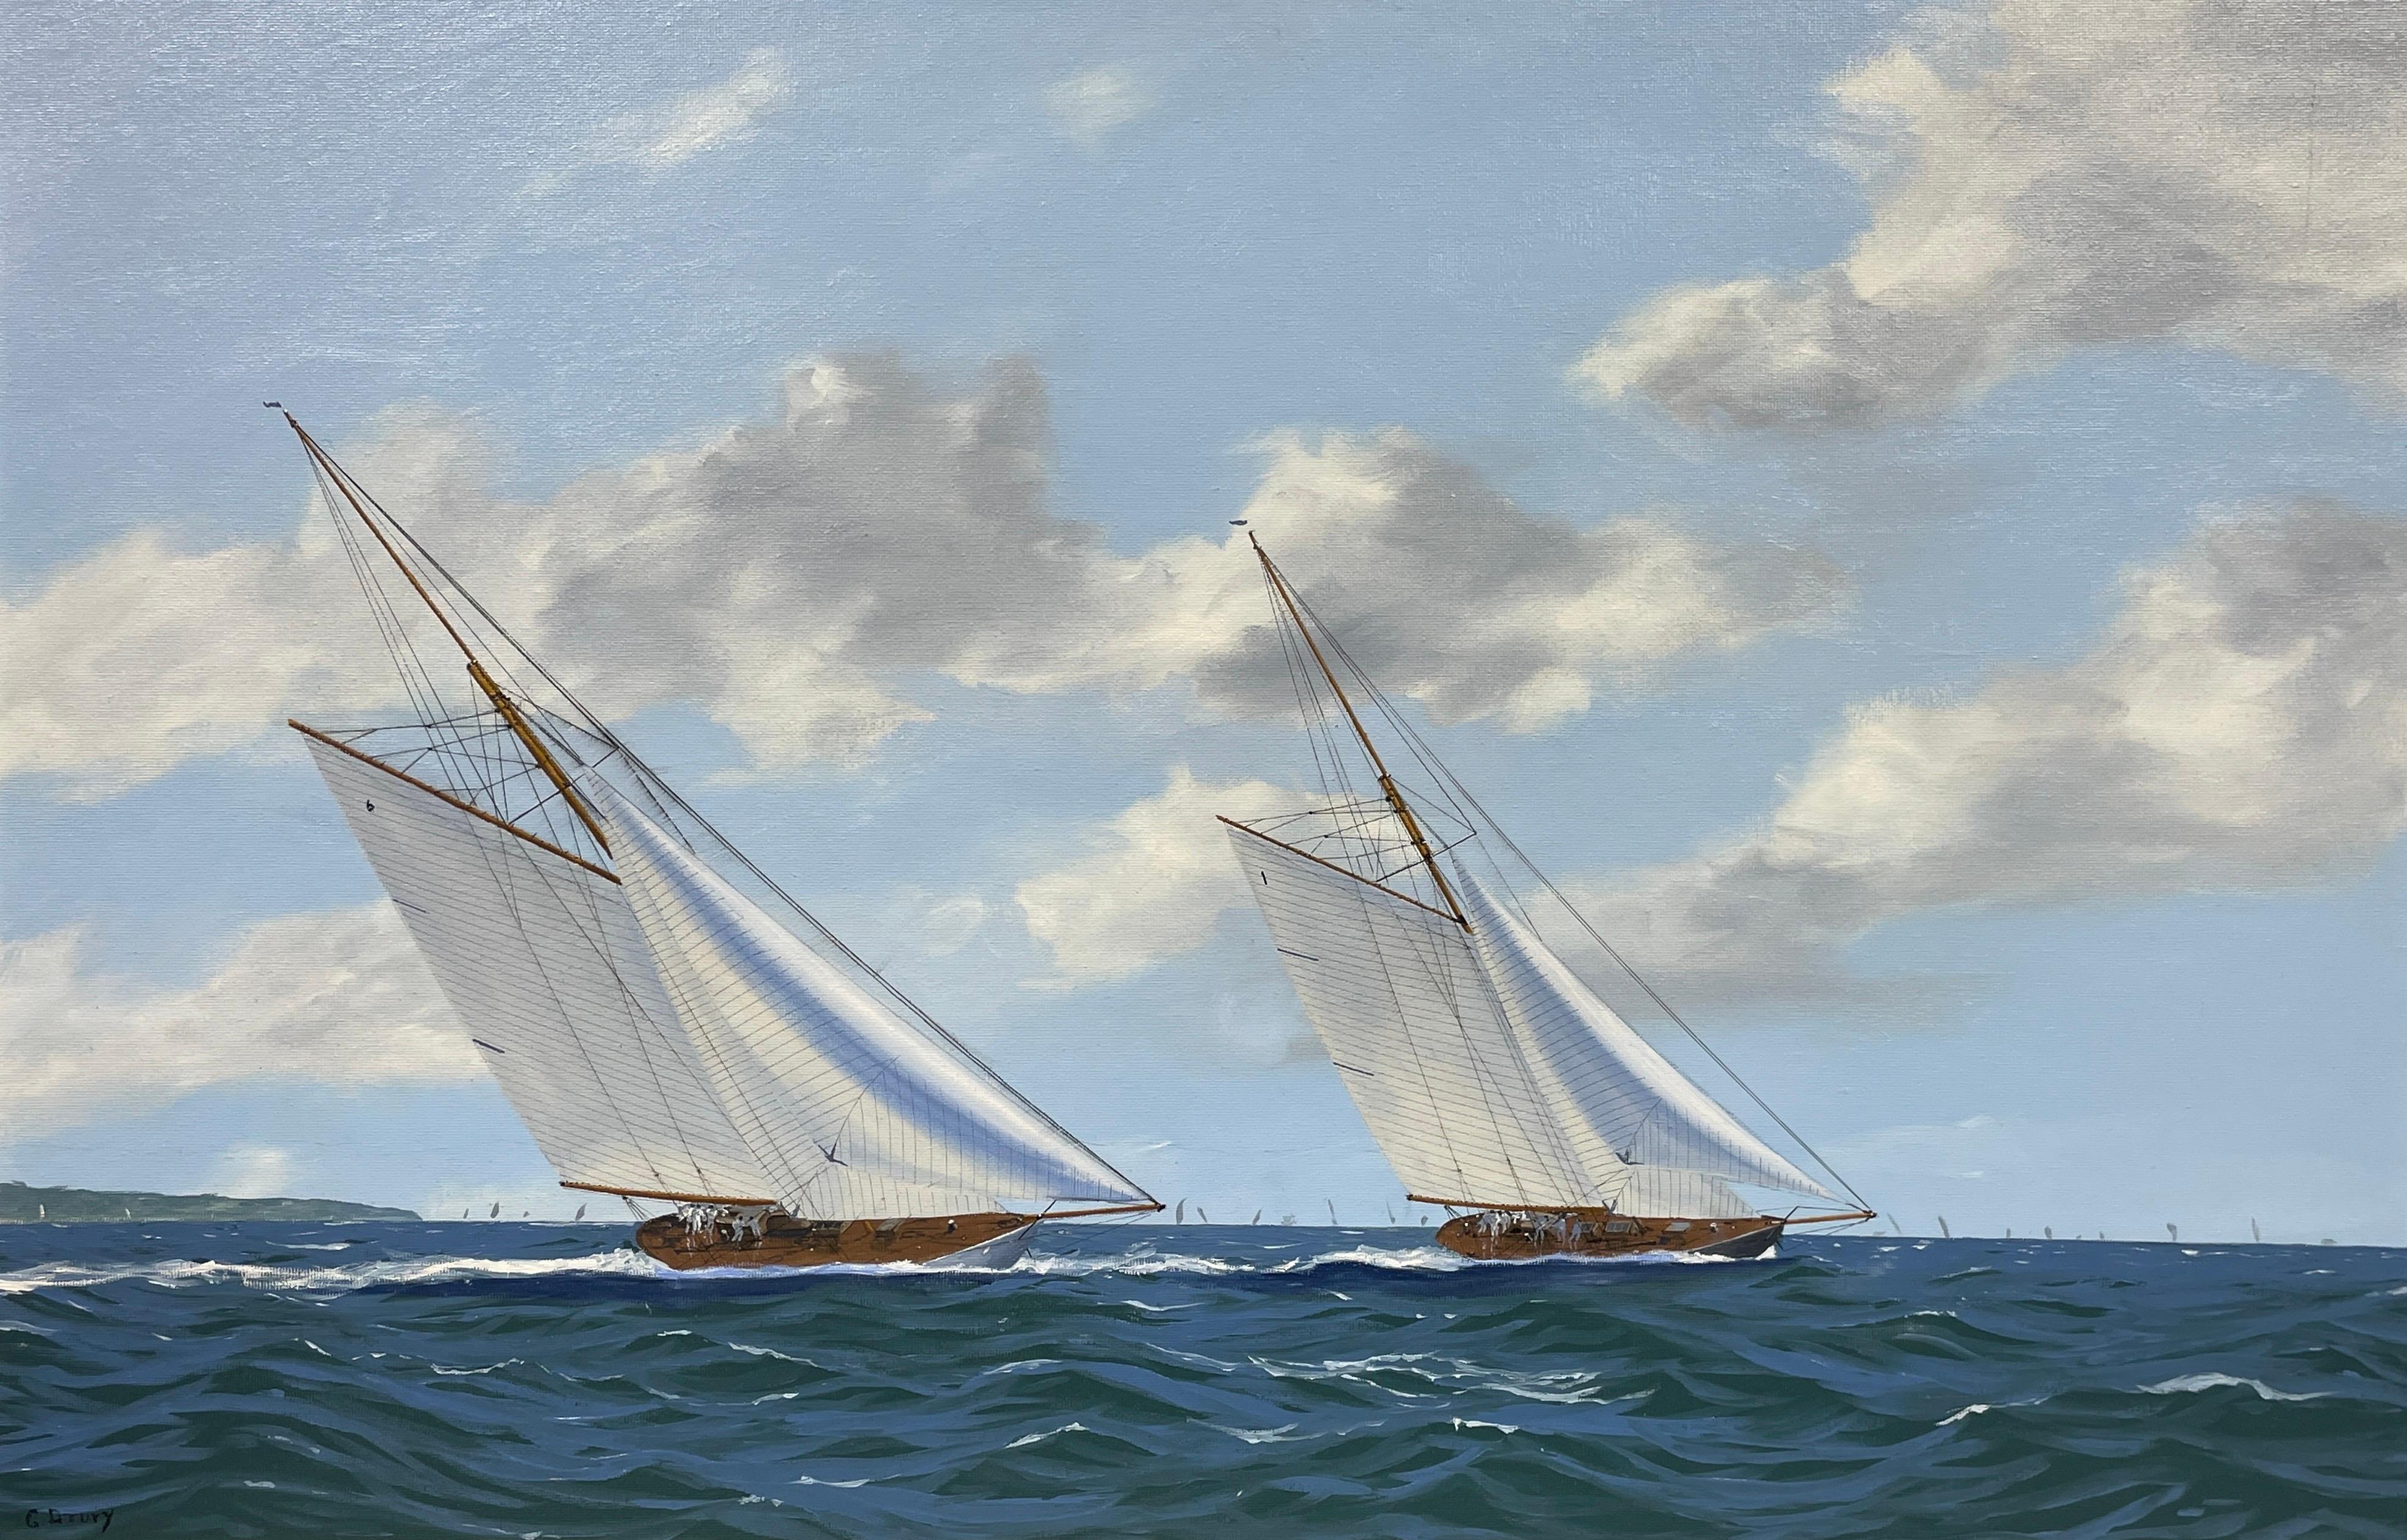 George Drury Figurative Painting – Klassische klassische Renn Yachts auf dem Solent, feines Ölgemälde der britischen Marine, signiert